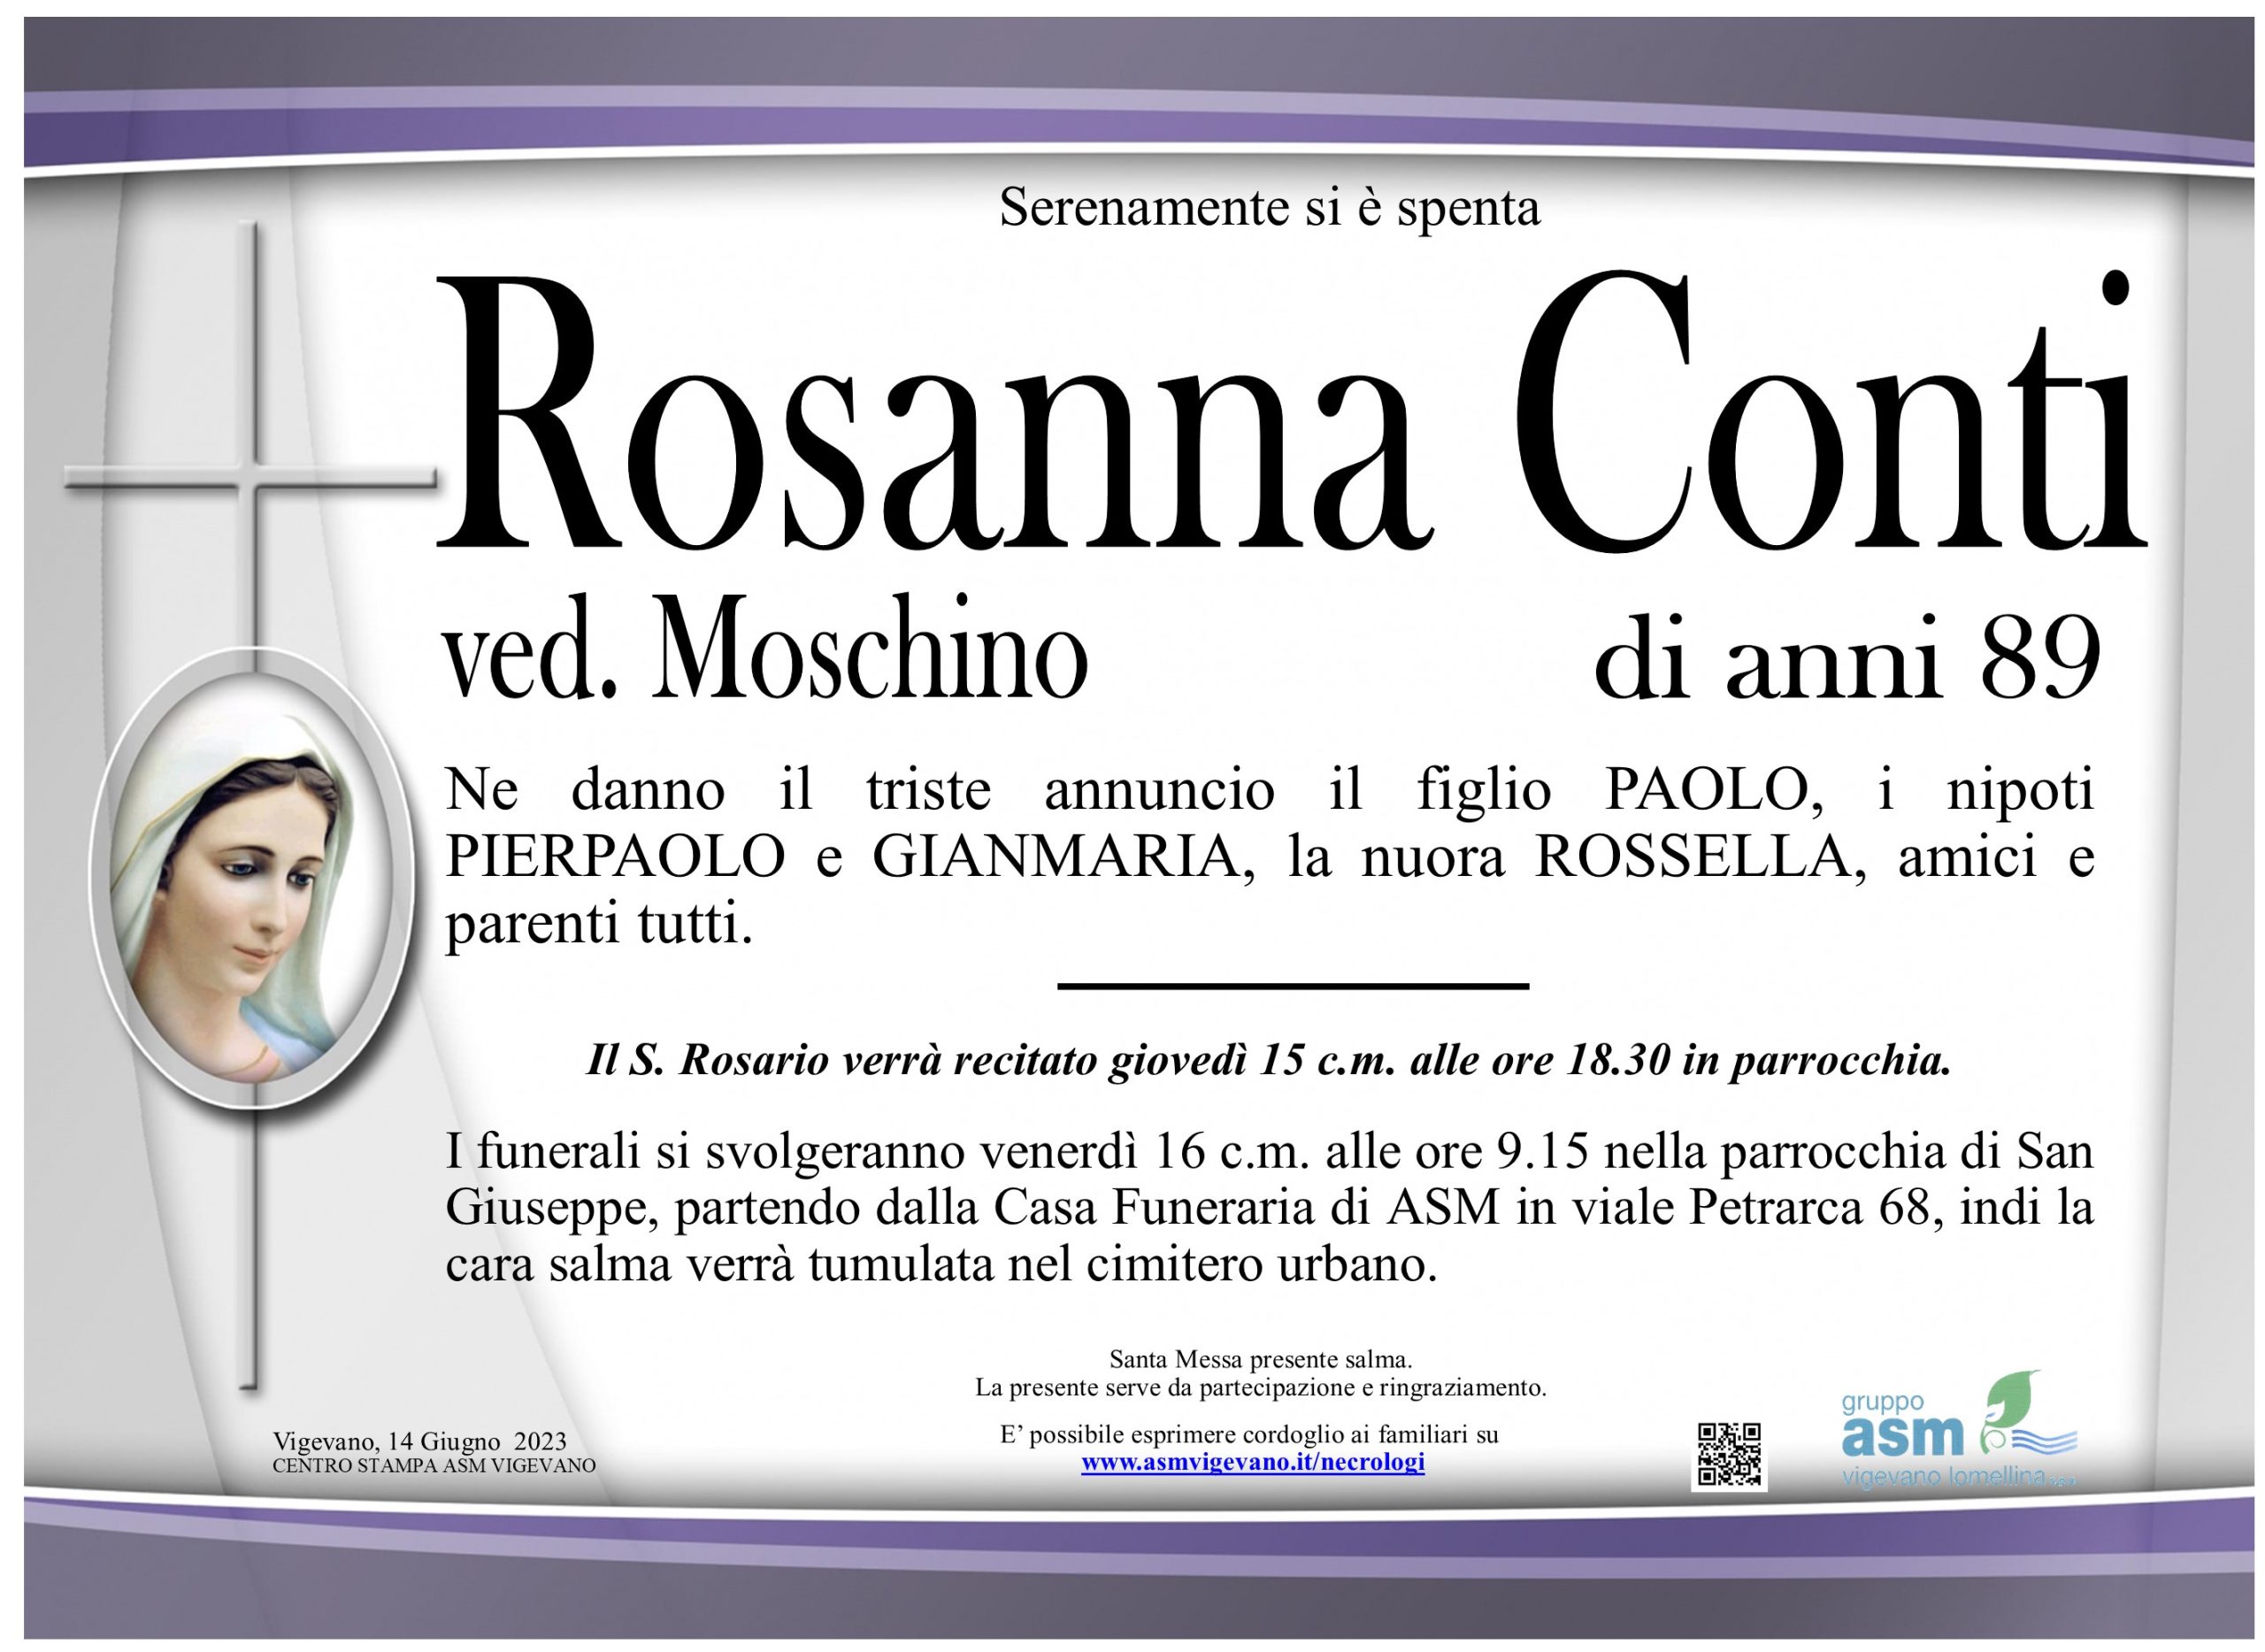 Rosanna Conti